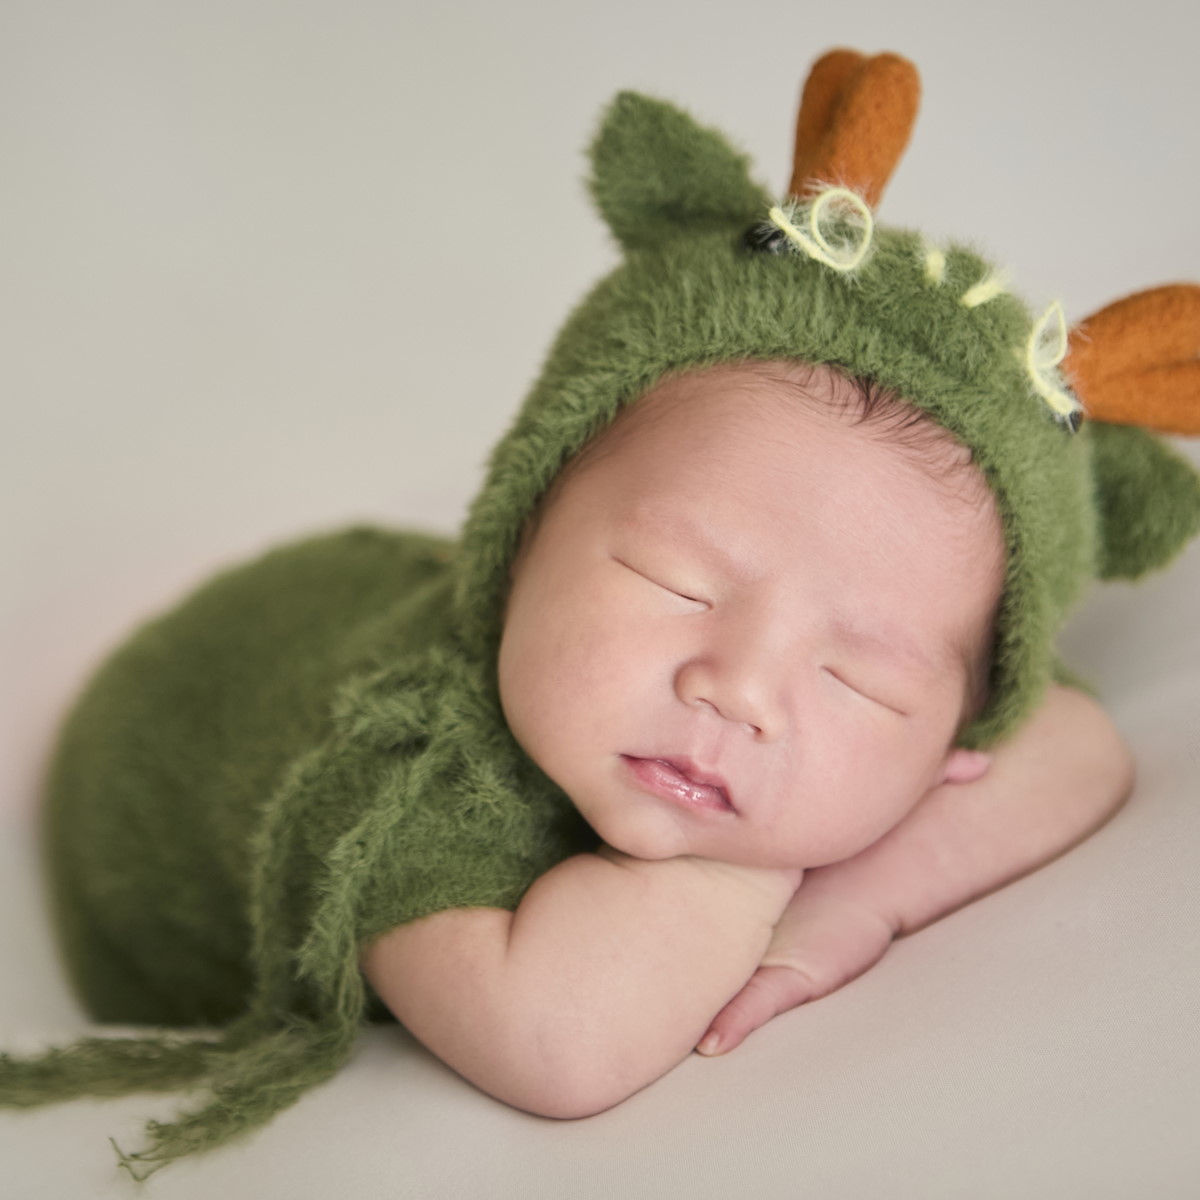 Newborn Portrait Klang | Baby Photography Klang | Baby Photography Klang | Professional Photography Service Klang